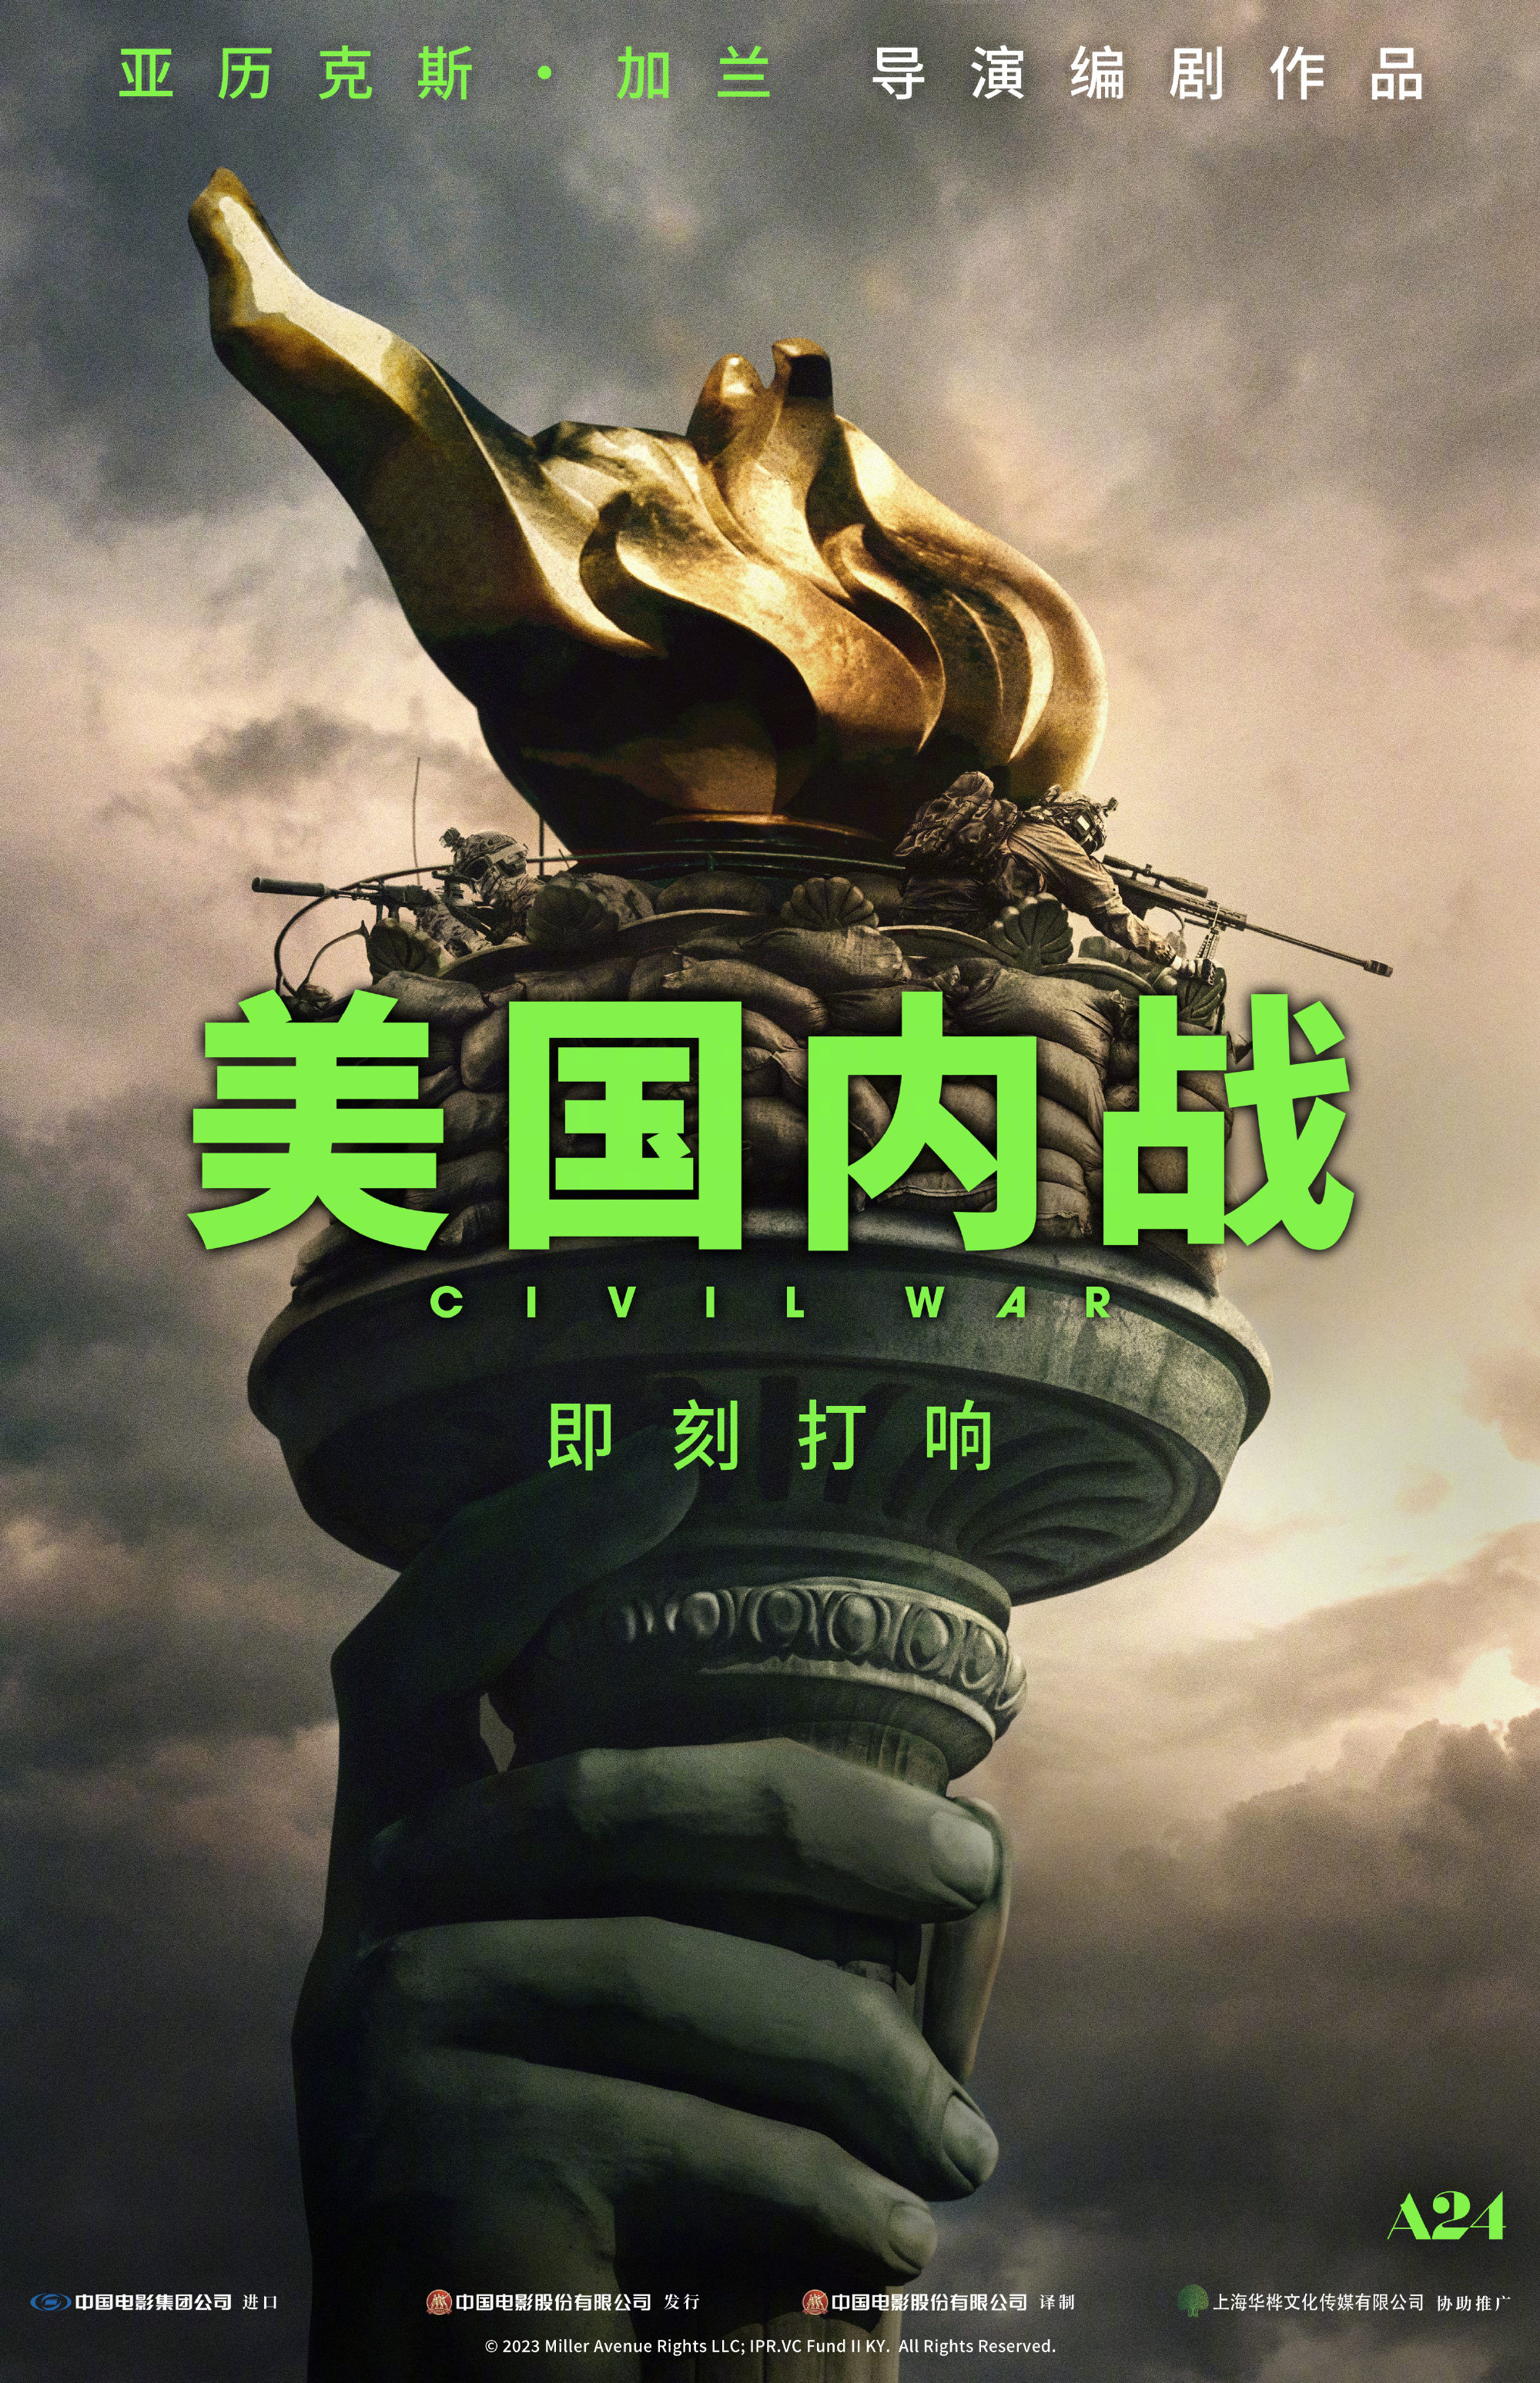 《美国内战》确认引进中国内地 发布先导海报  第1张